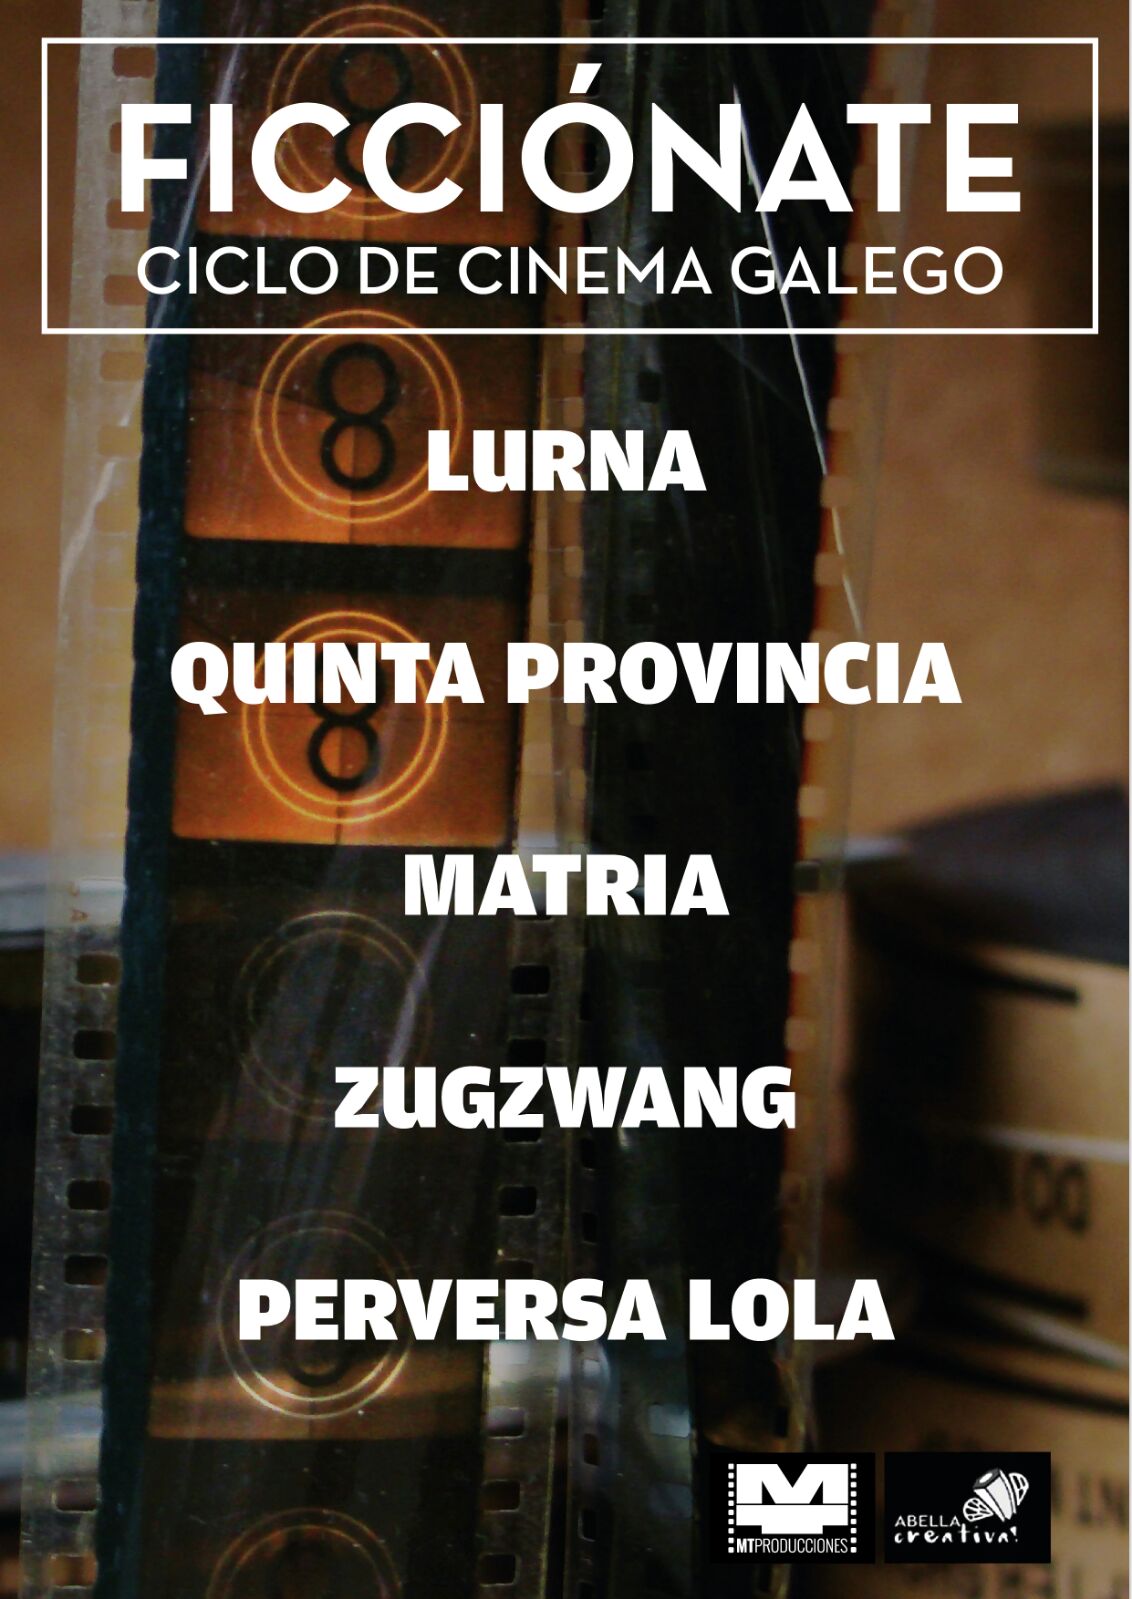 III Ficciónate 2018 Ciclo de Cinema Galego